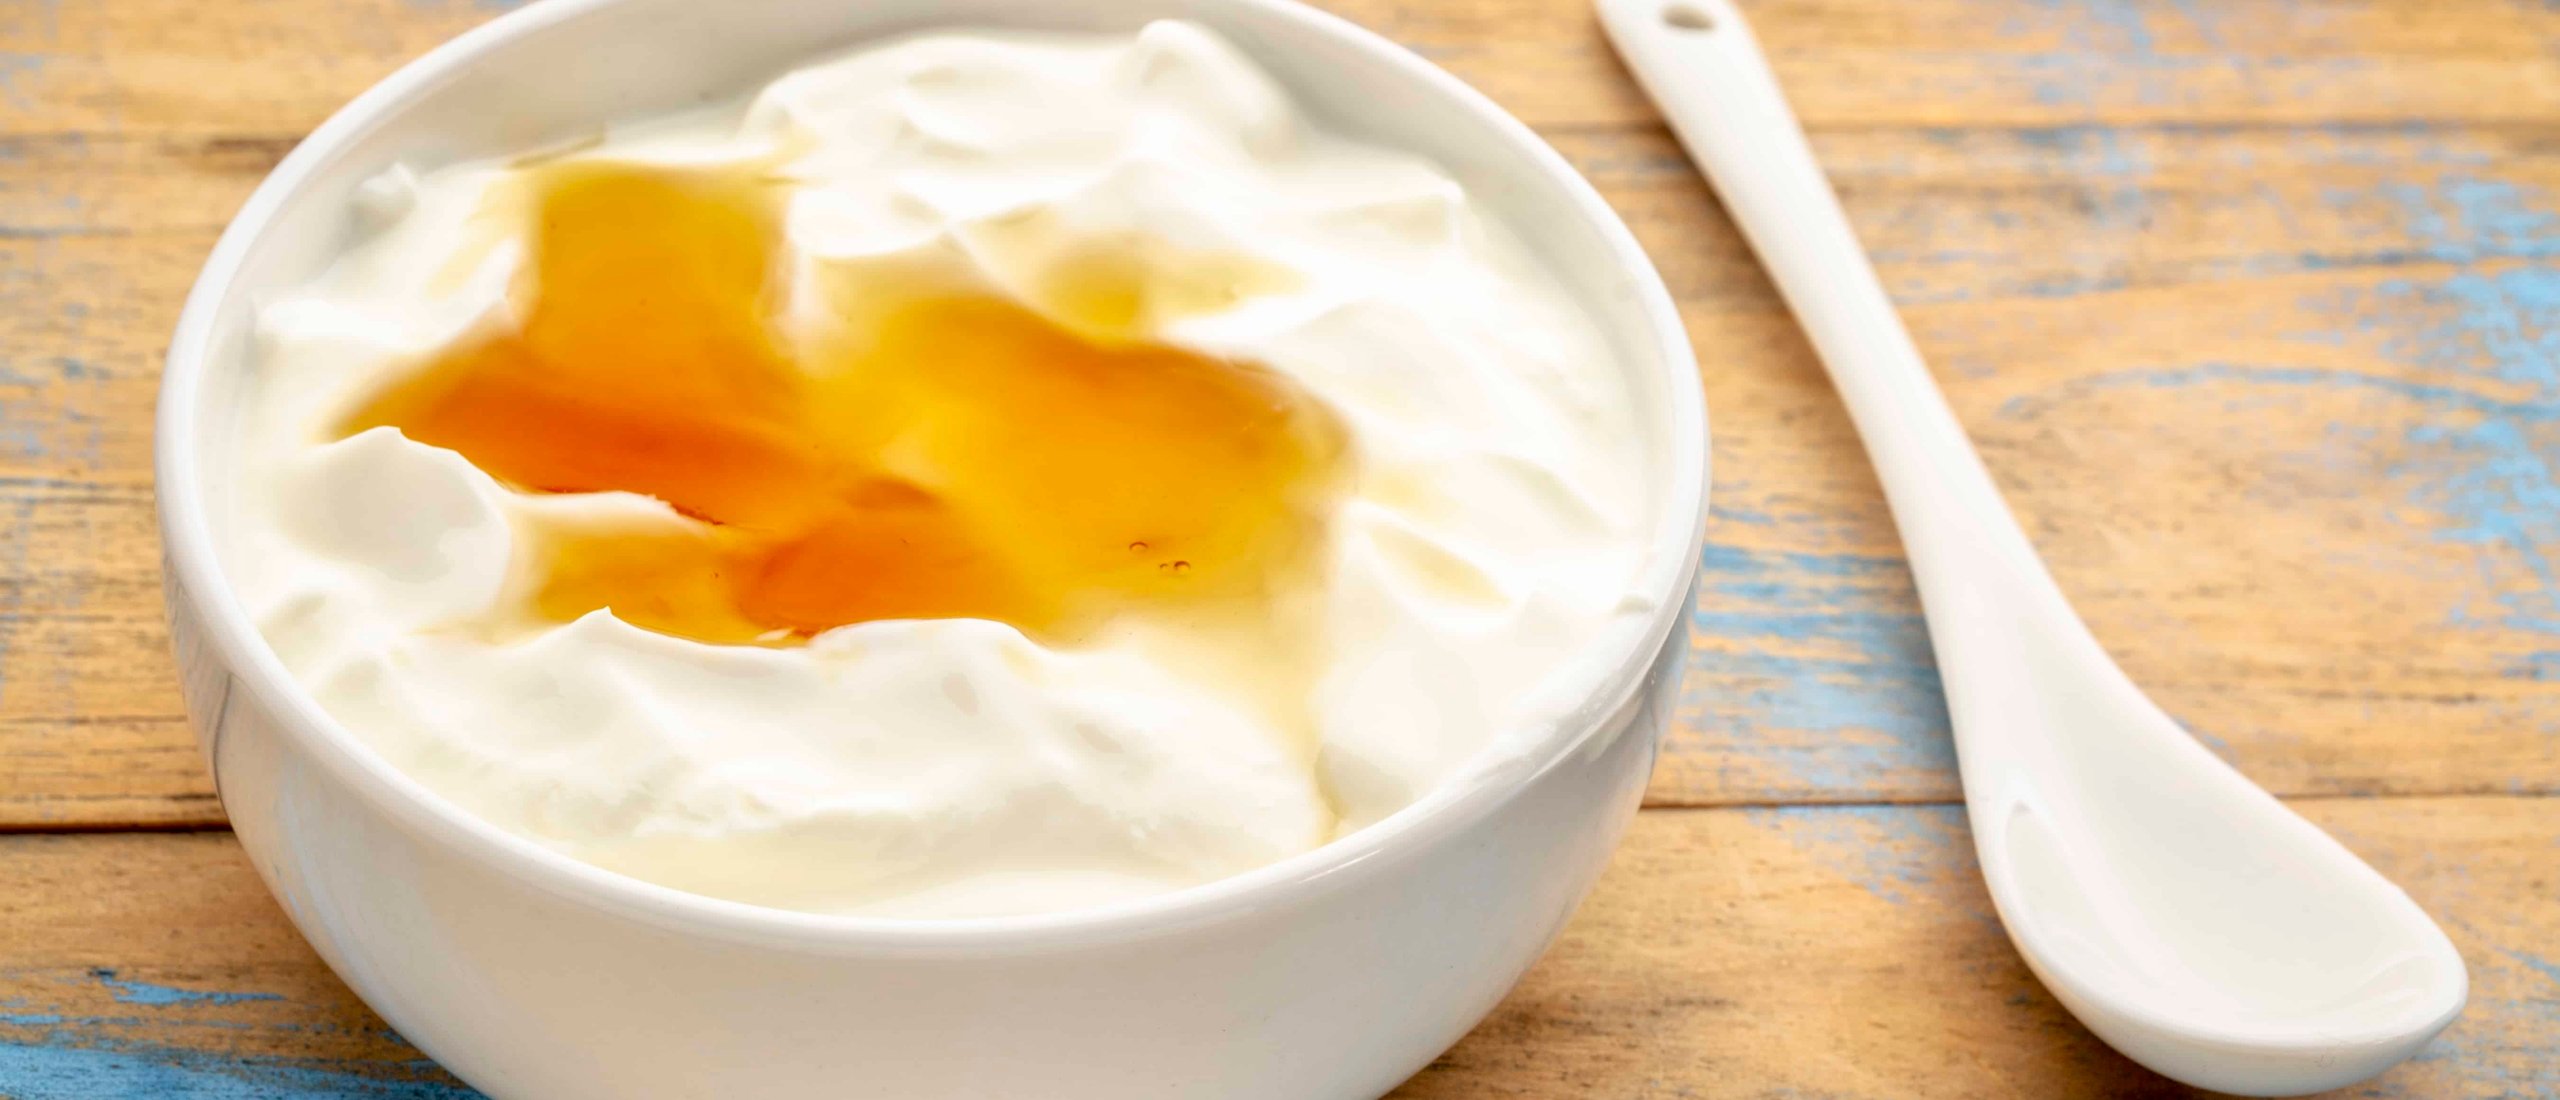 griekse-yoghurt-met-honing-en-kaneel